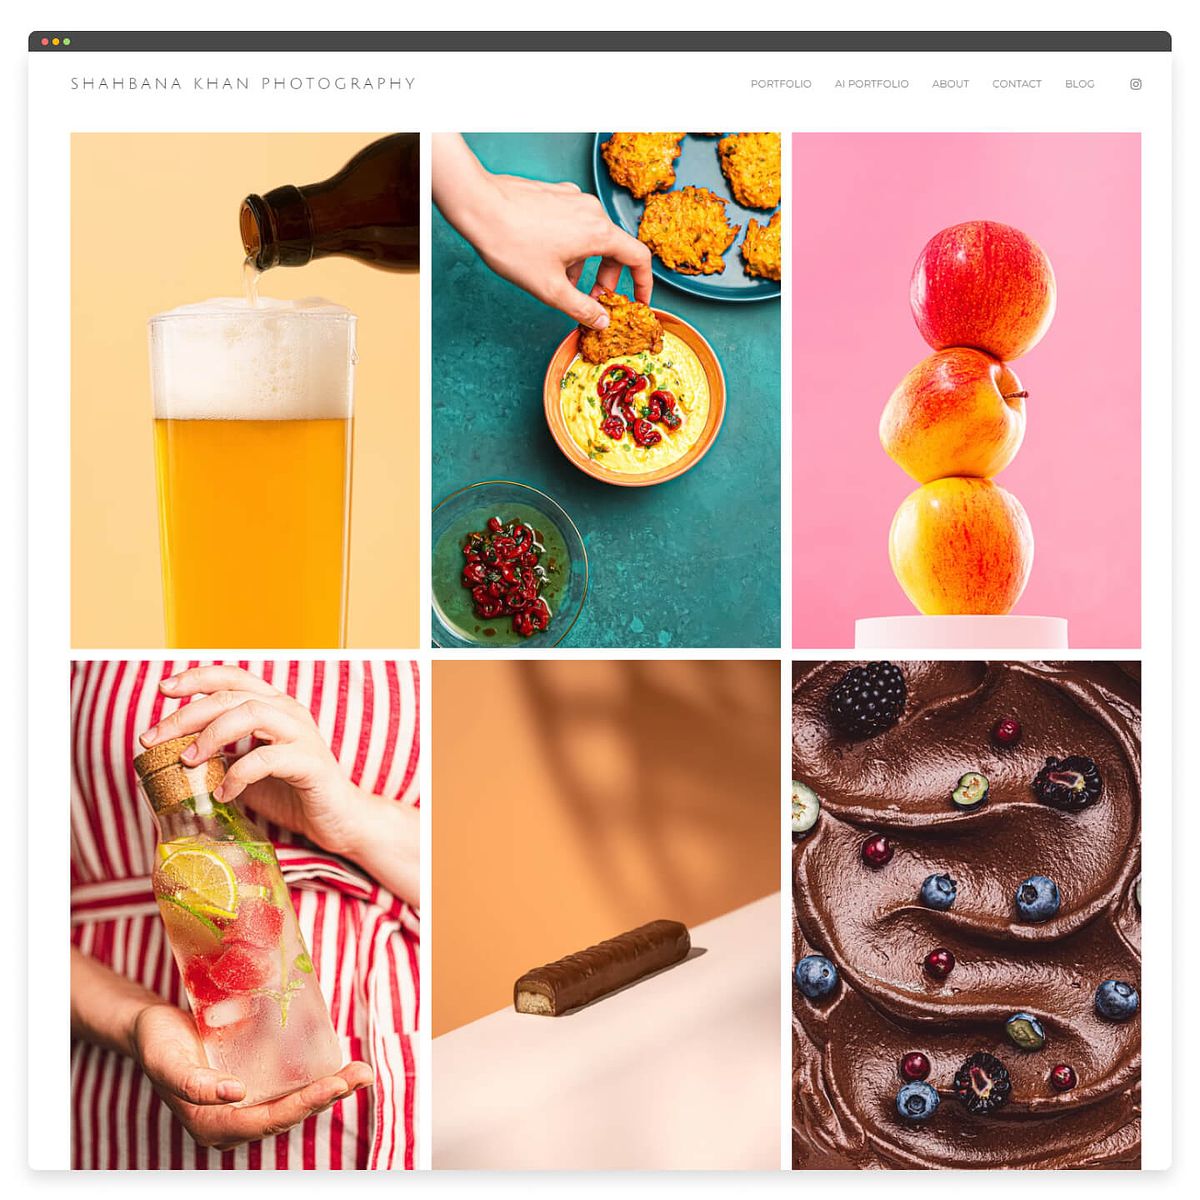 シャバナ・カーンの食べ物写真のウェブサイトのデザイン